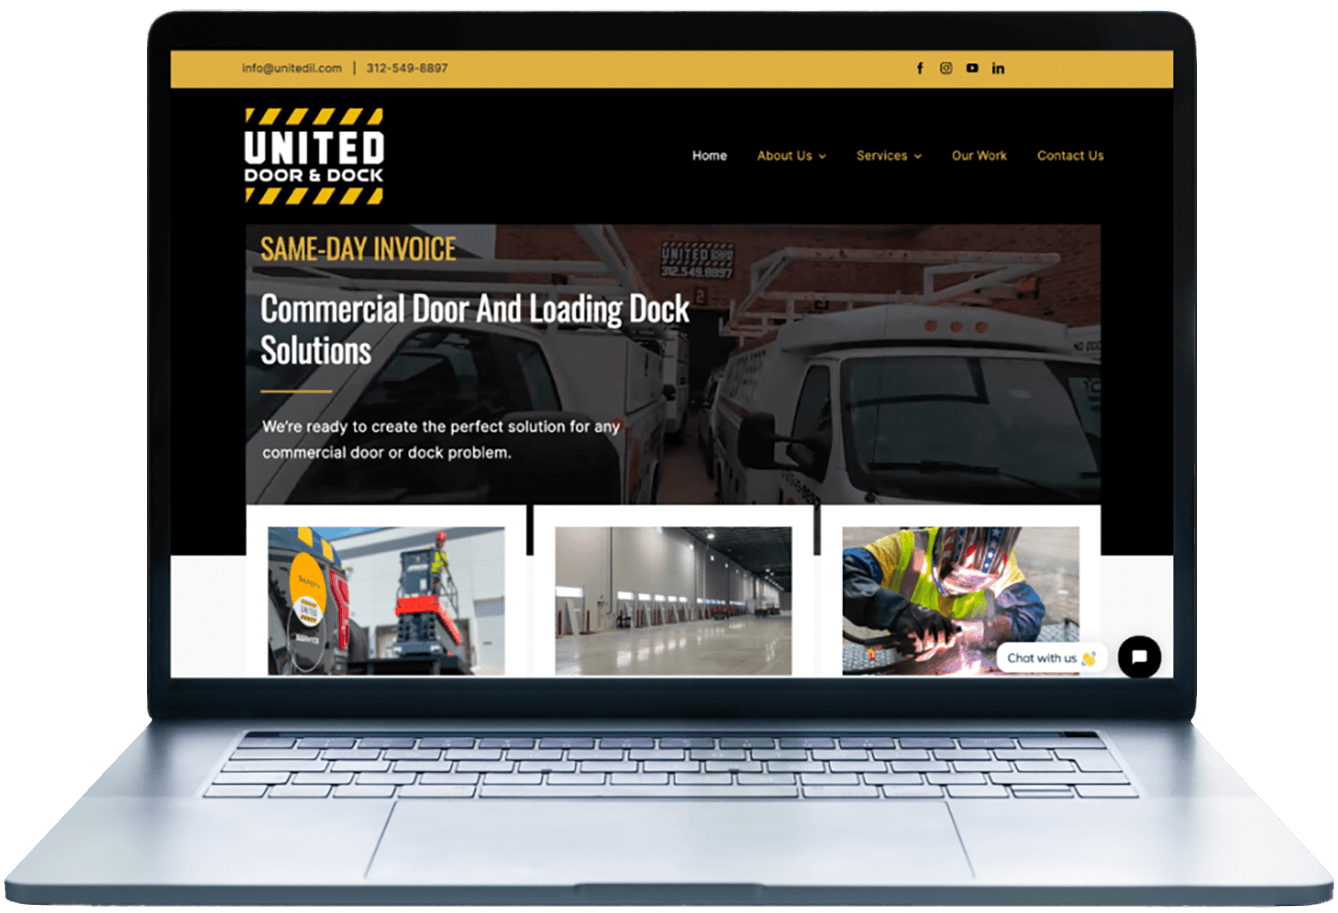 United Door & Dock website